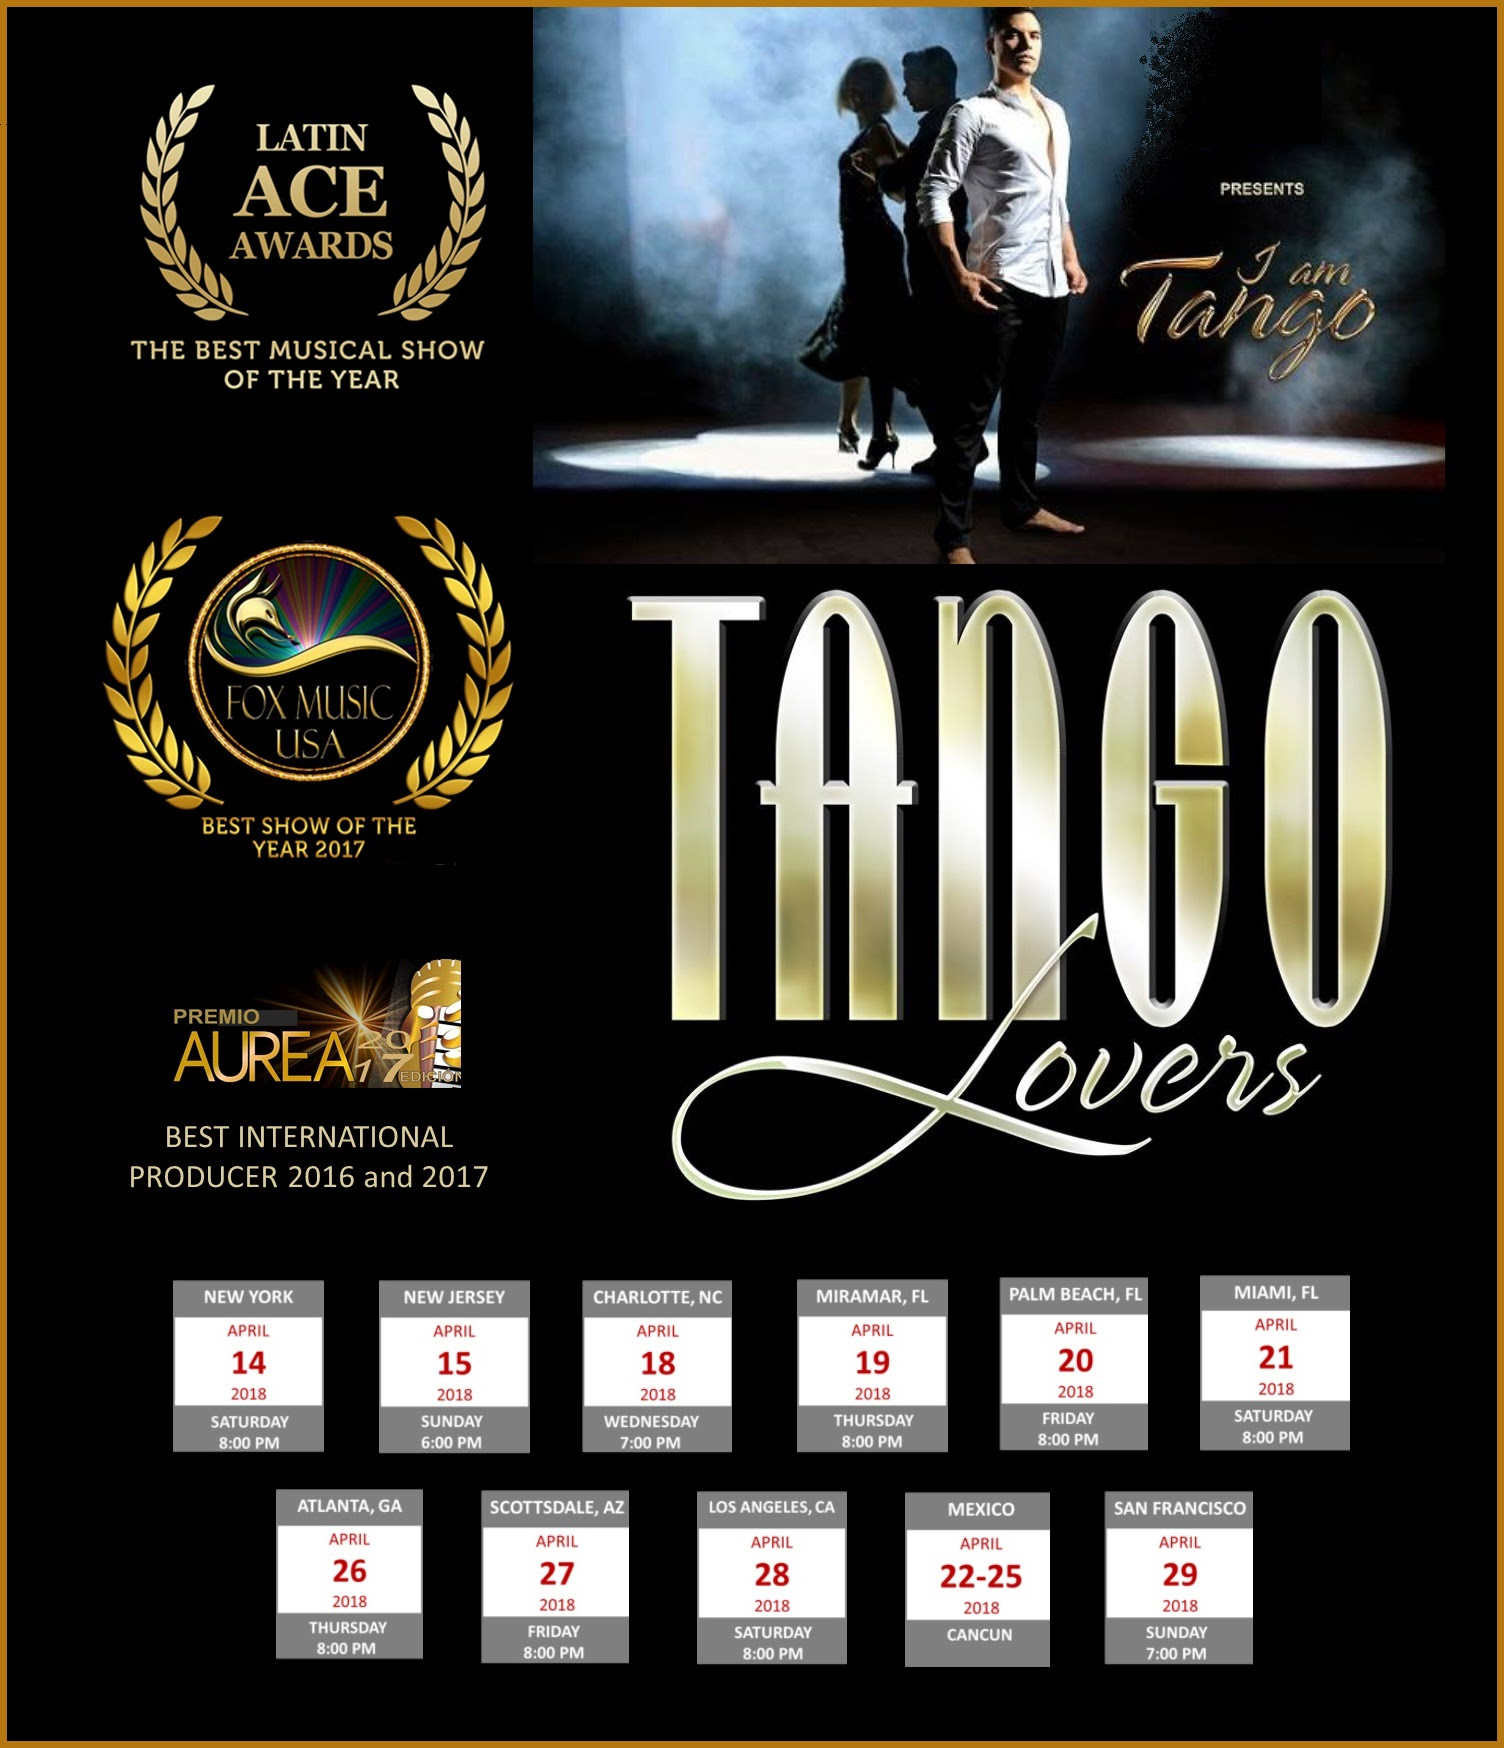 Presentaciones de Tango Lovers en NY y NJ